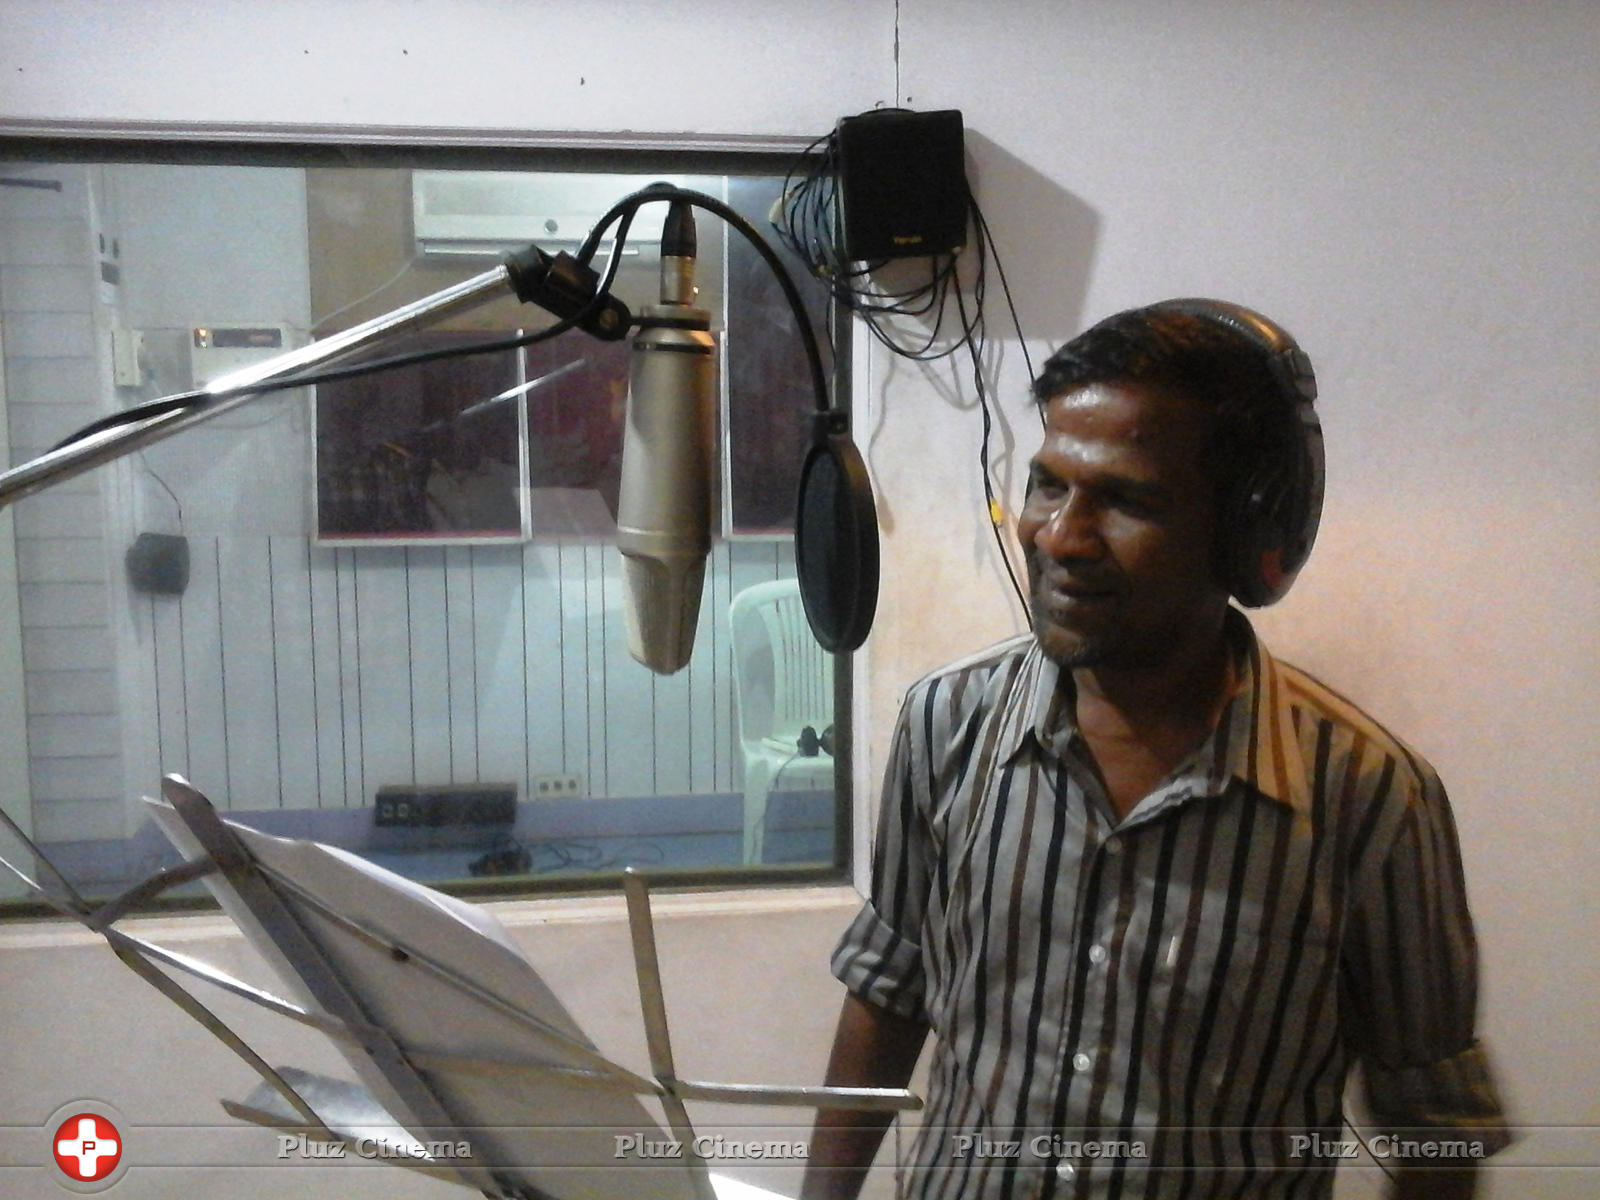 Gaana Bala - Yogiyan Varan Somba Thooki Ulla Vai Song Recording Stills | Picture 1010045